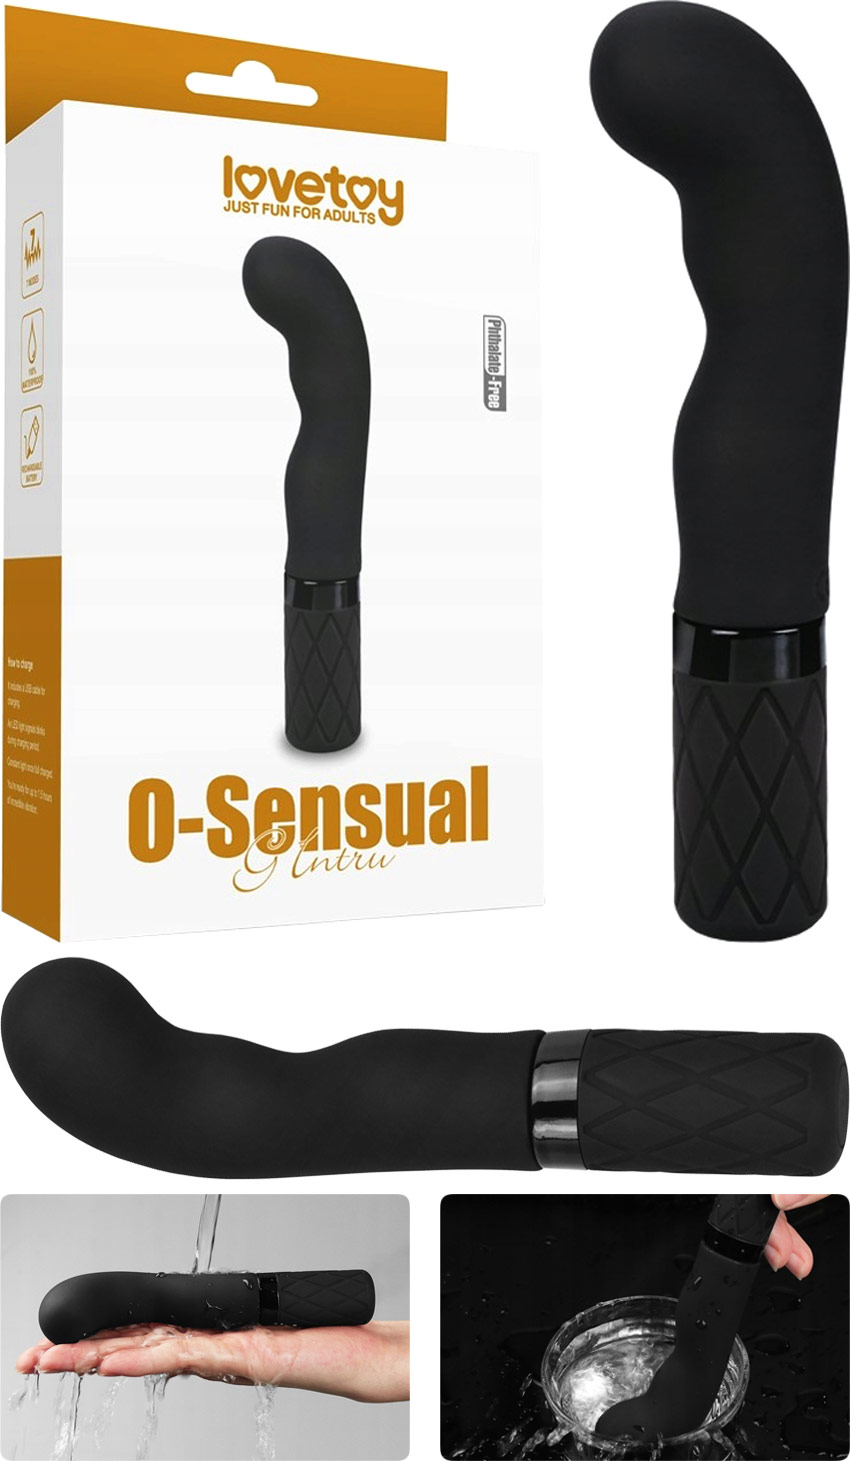 O-Sensual G Intru G-spot vibrator